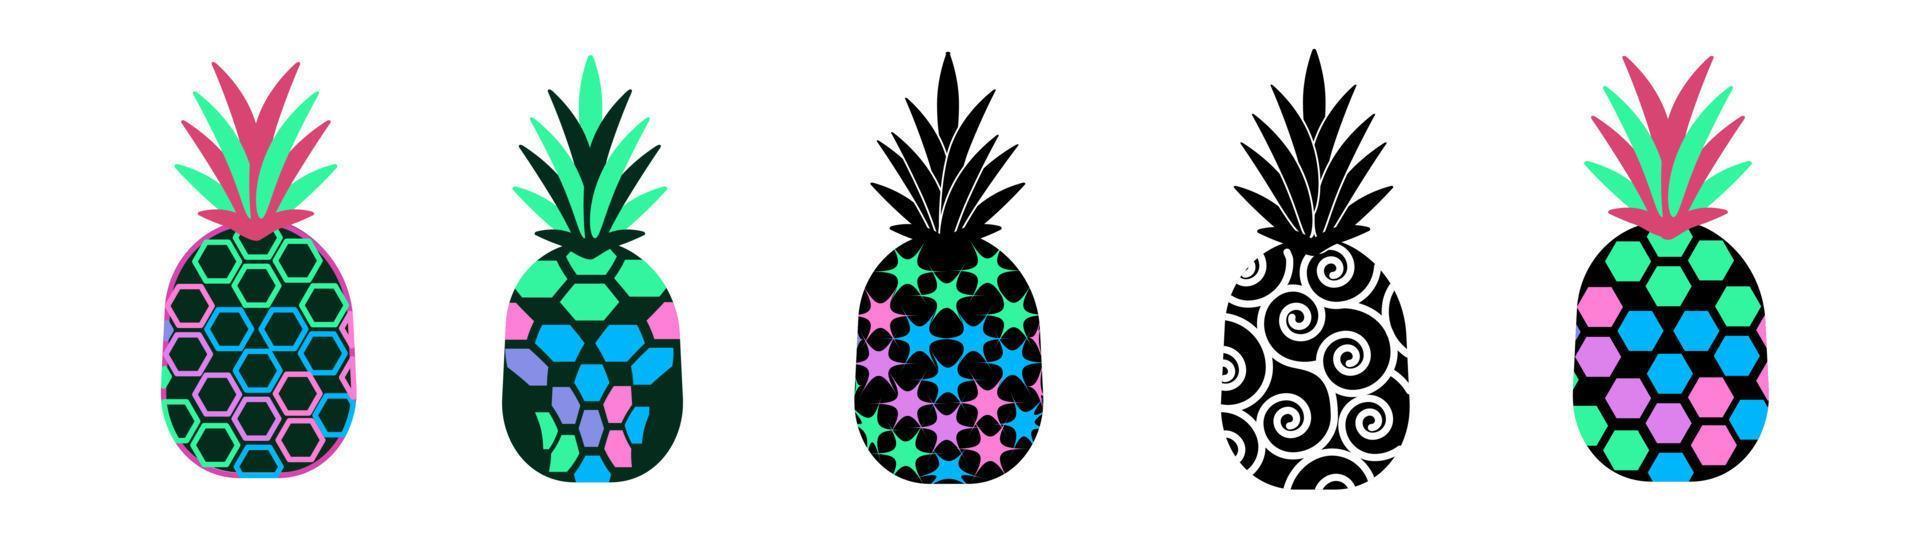 klotter ananas uppsättning. modern ananas frukt samling. abstrakt konst av tropisk frukter. isolerat illustrationer på en vit bakgrund. vektor illustration.